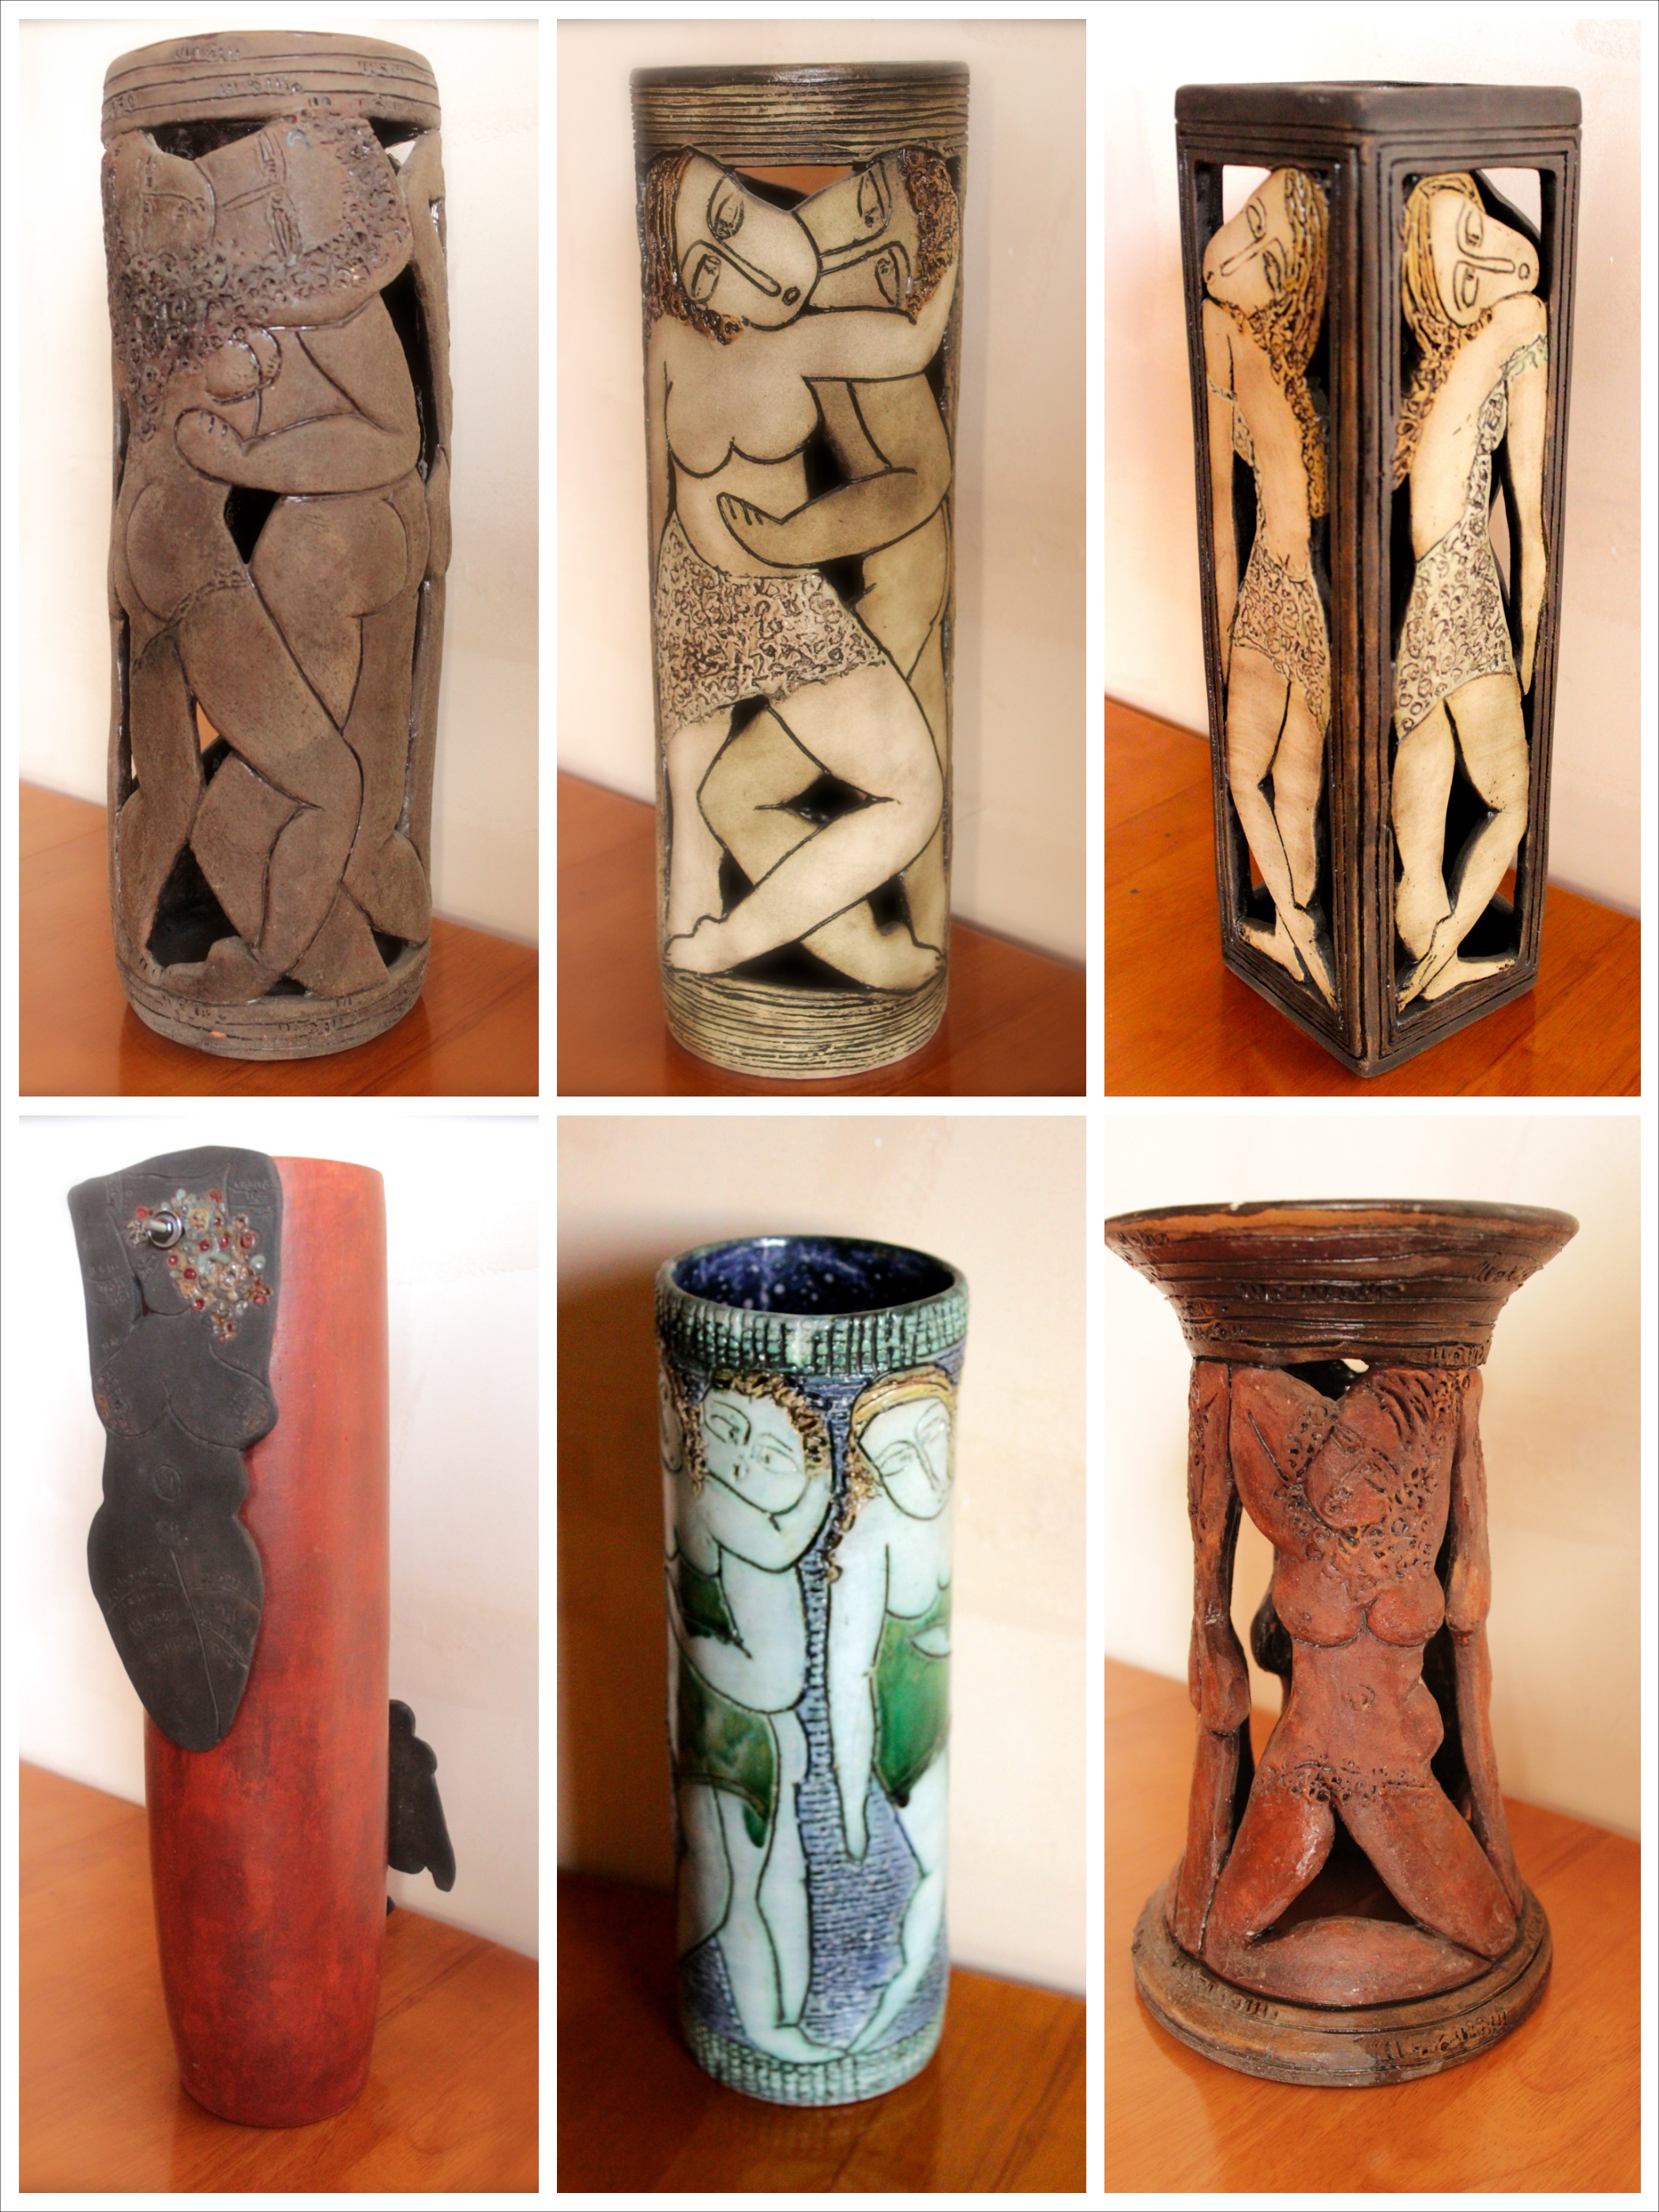 Armenian ceramic art